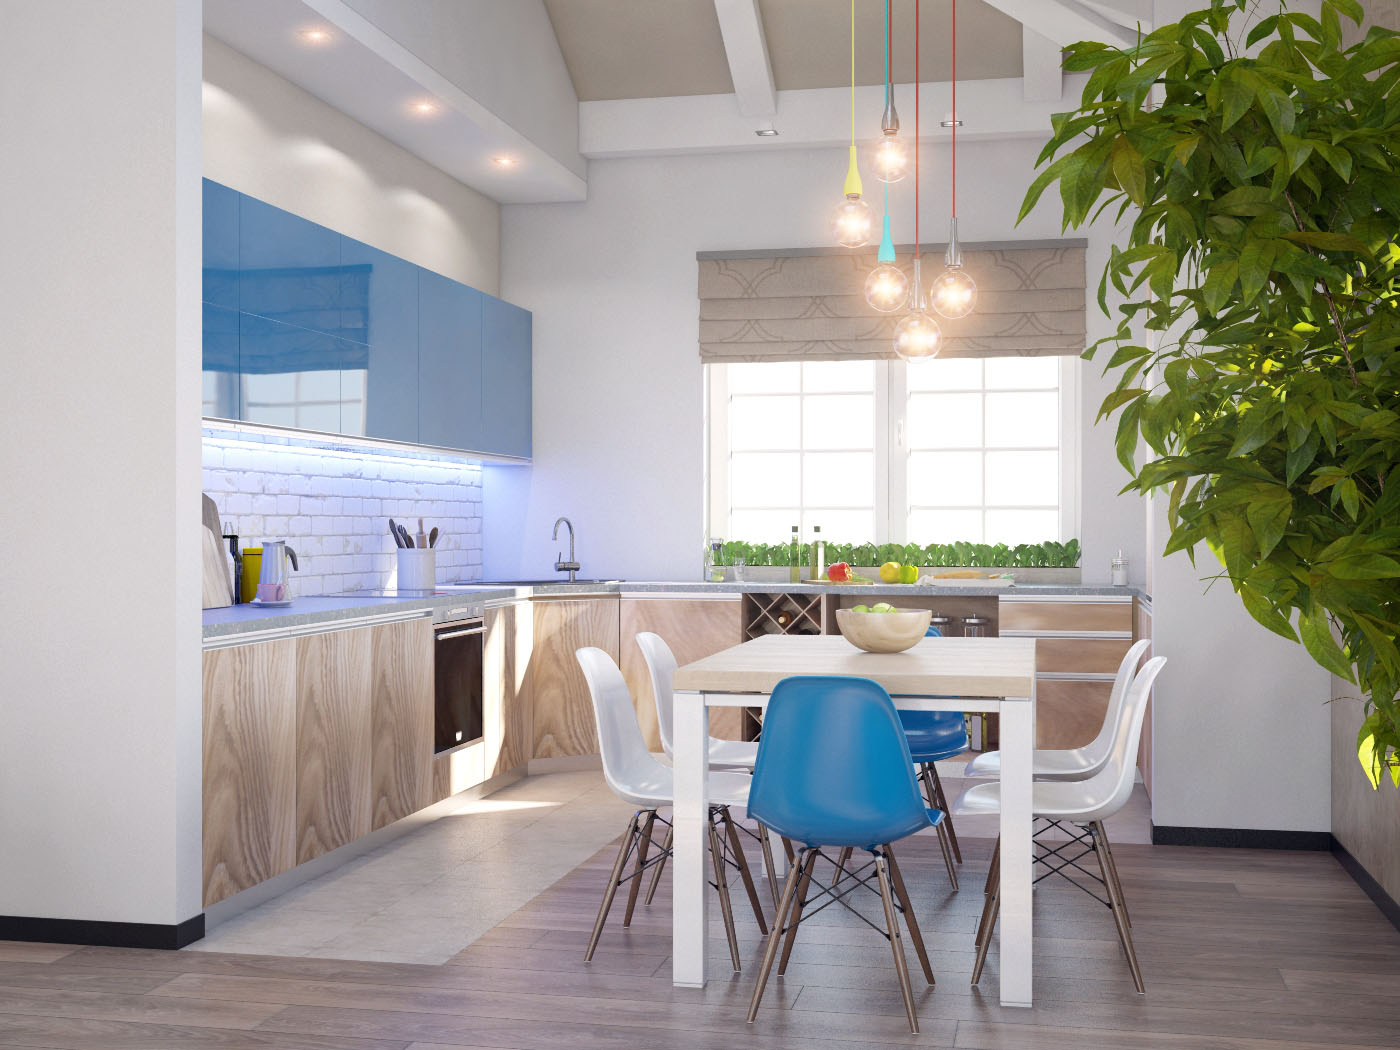 фото необычного интерьера дома с двухсветным пространством вид со стороны кухни проекта 243-D1+